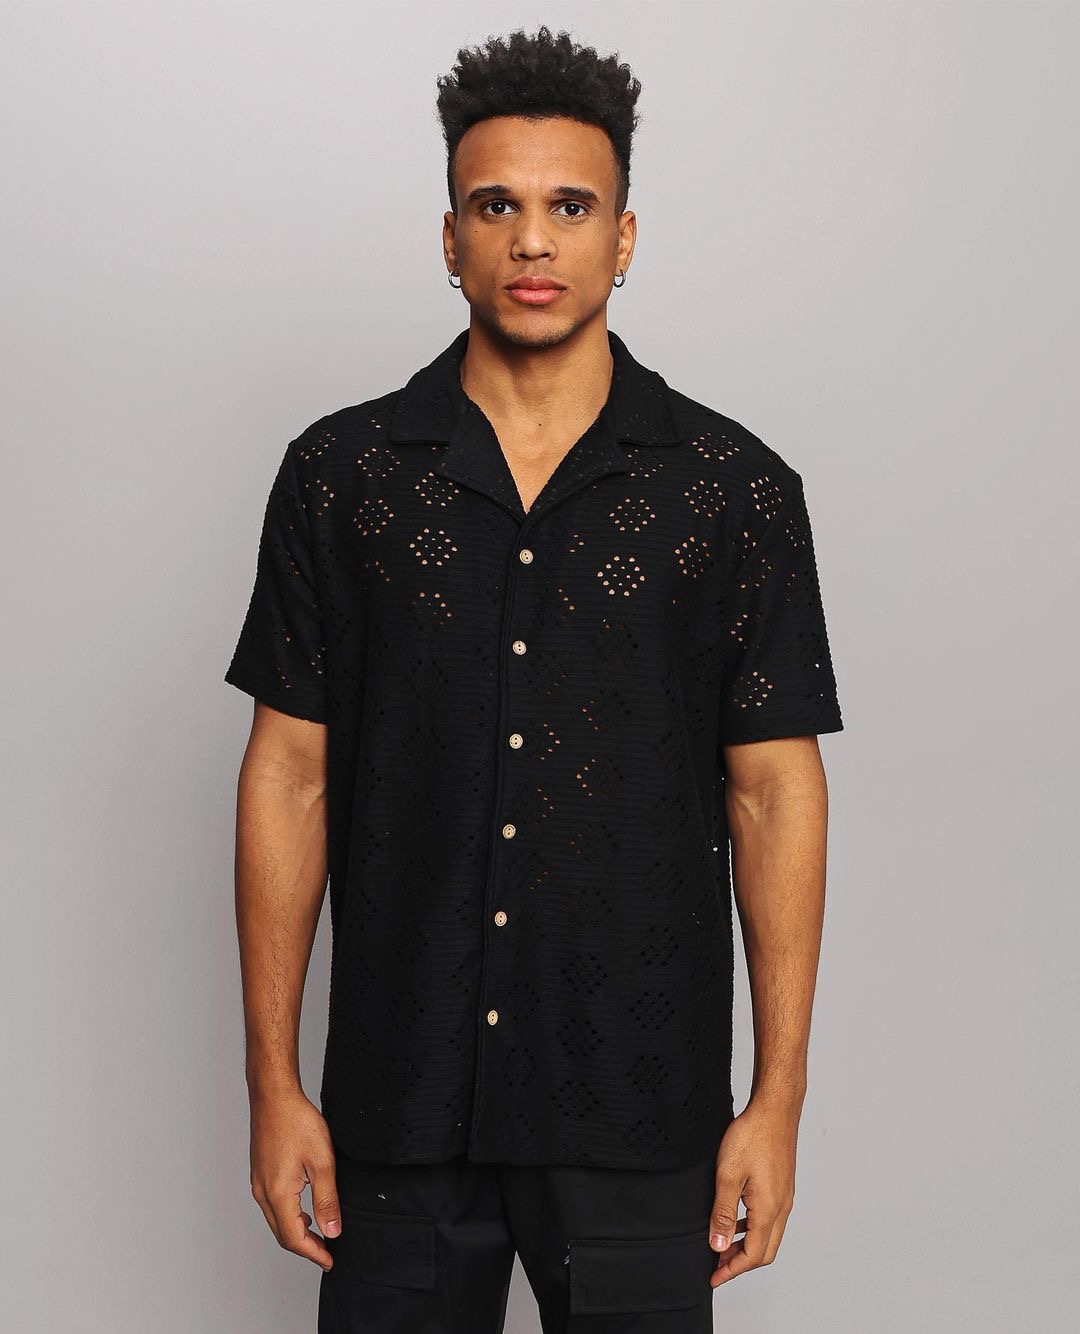 Μαύρο κοντομάνικο πουκάμισο fashion με σχέδιο-eksi-23-Y175 (3)